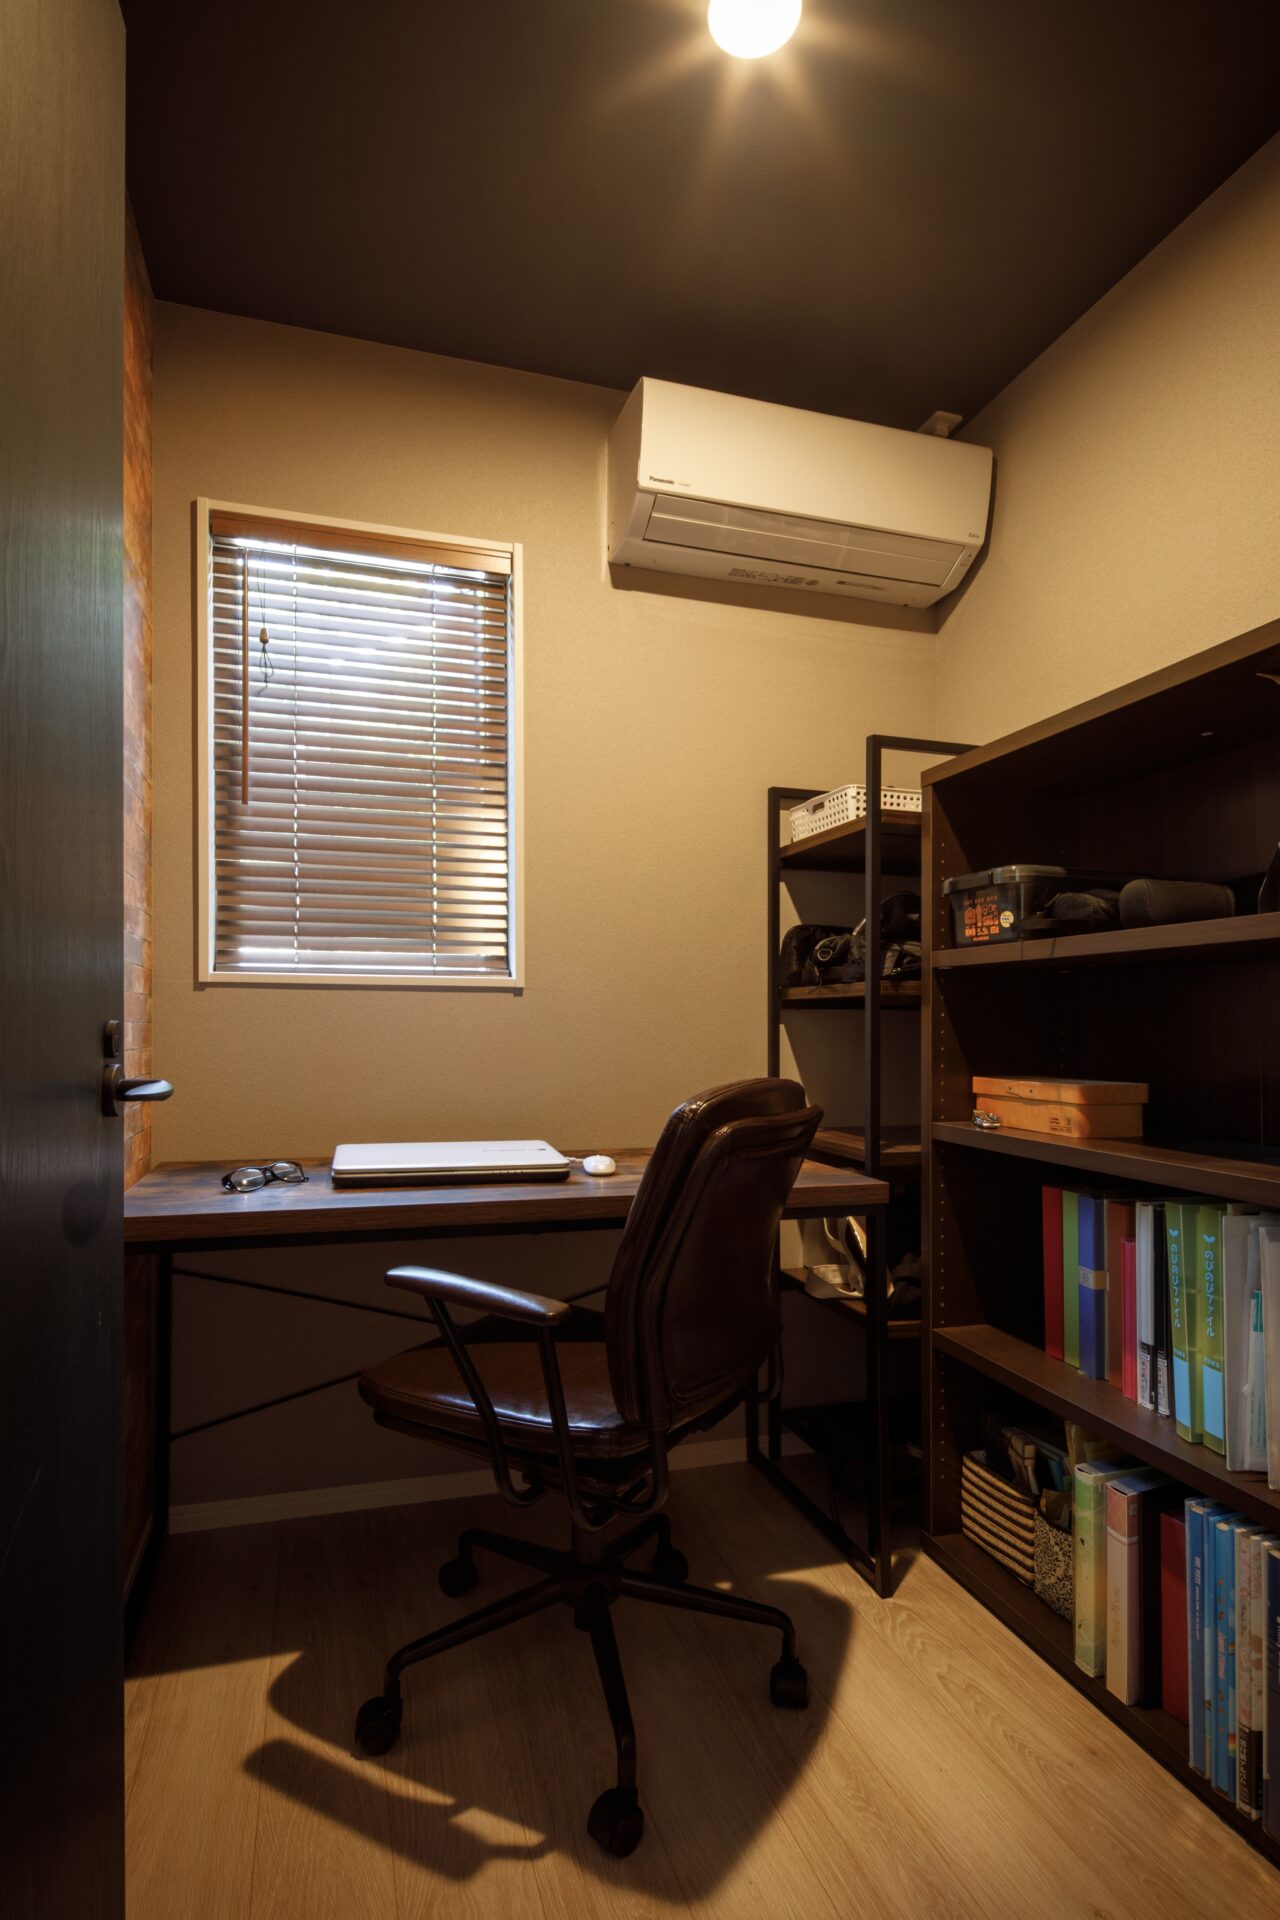 書斎部屋は仕事に集中したりひとりでリラックスできるよう、落ち着いた雰囲気に仕上げました